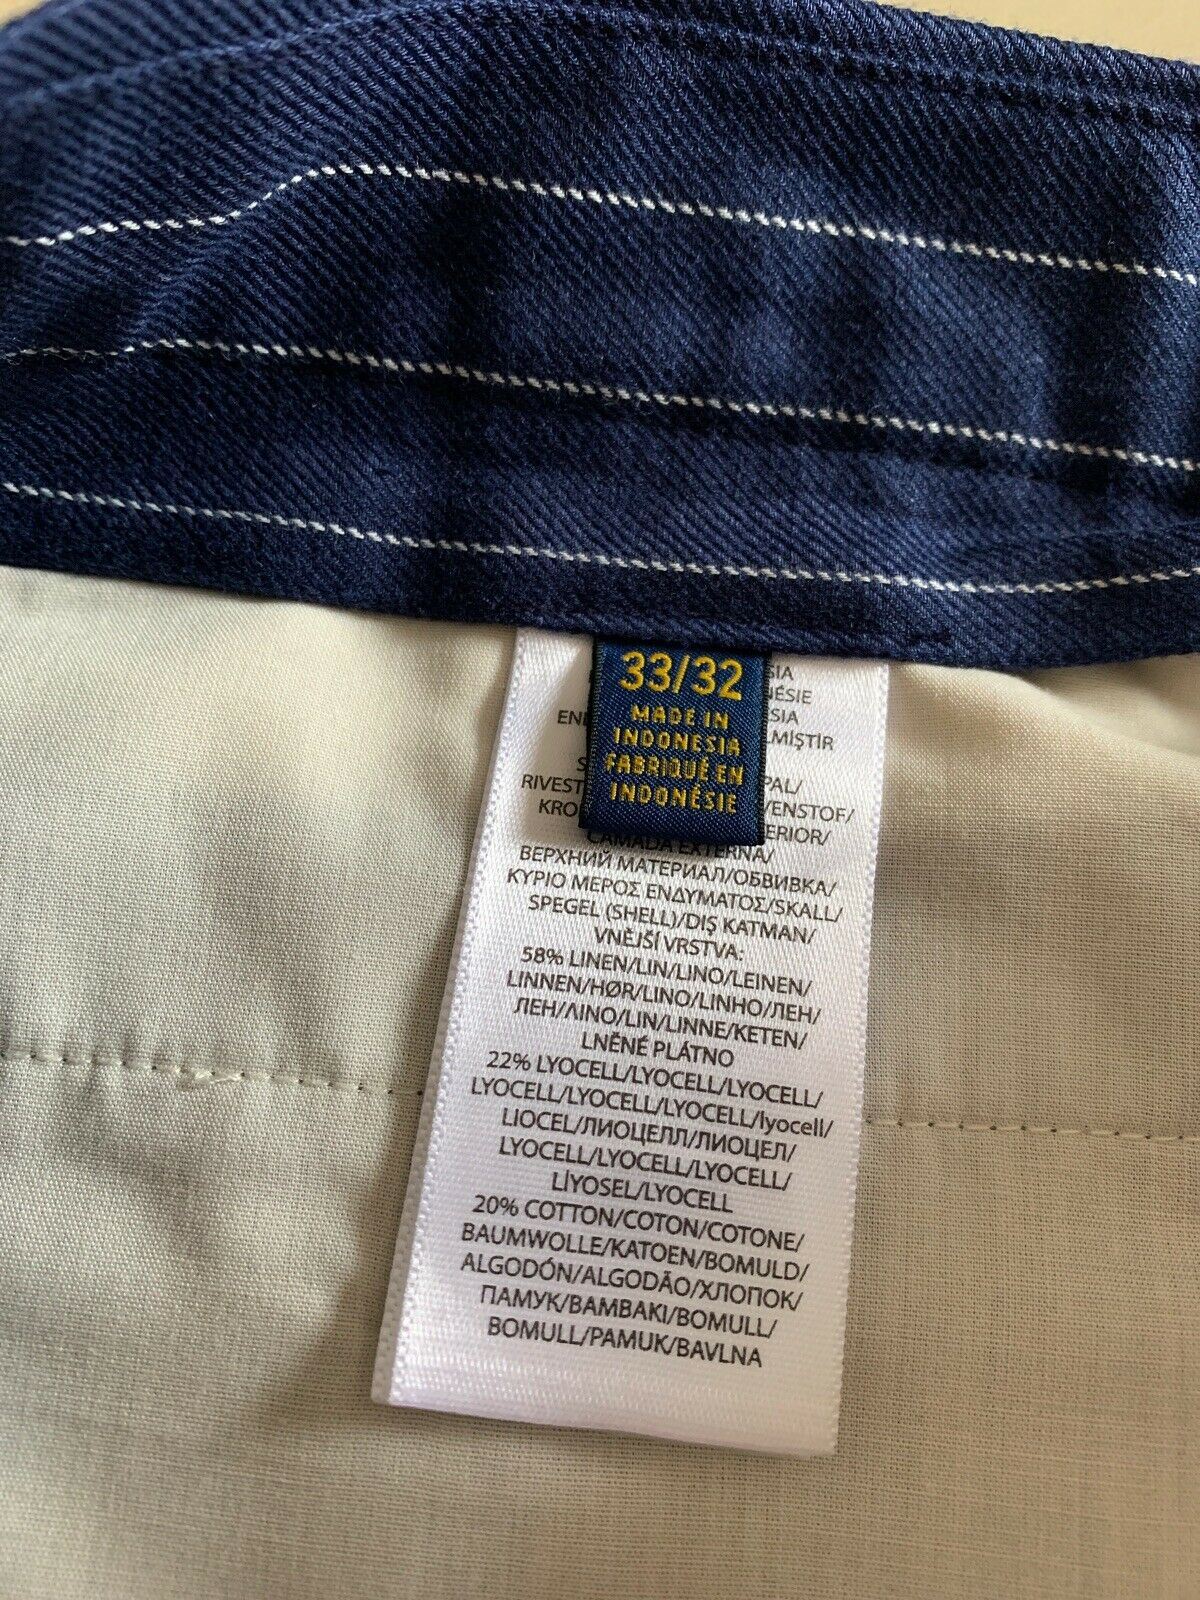 Мужские брюки NWT Polo Ralph Lauren синие, размер 33 США